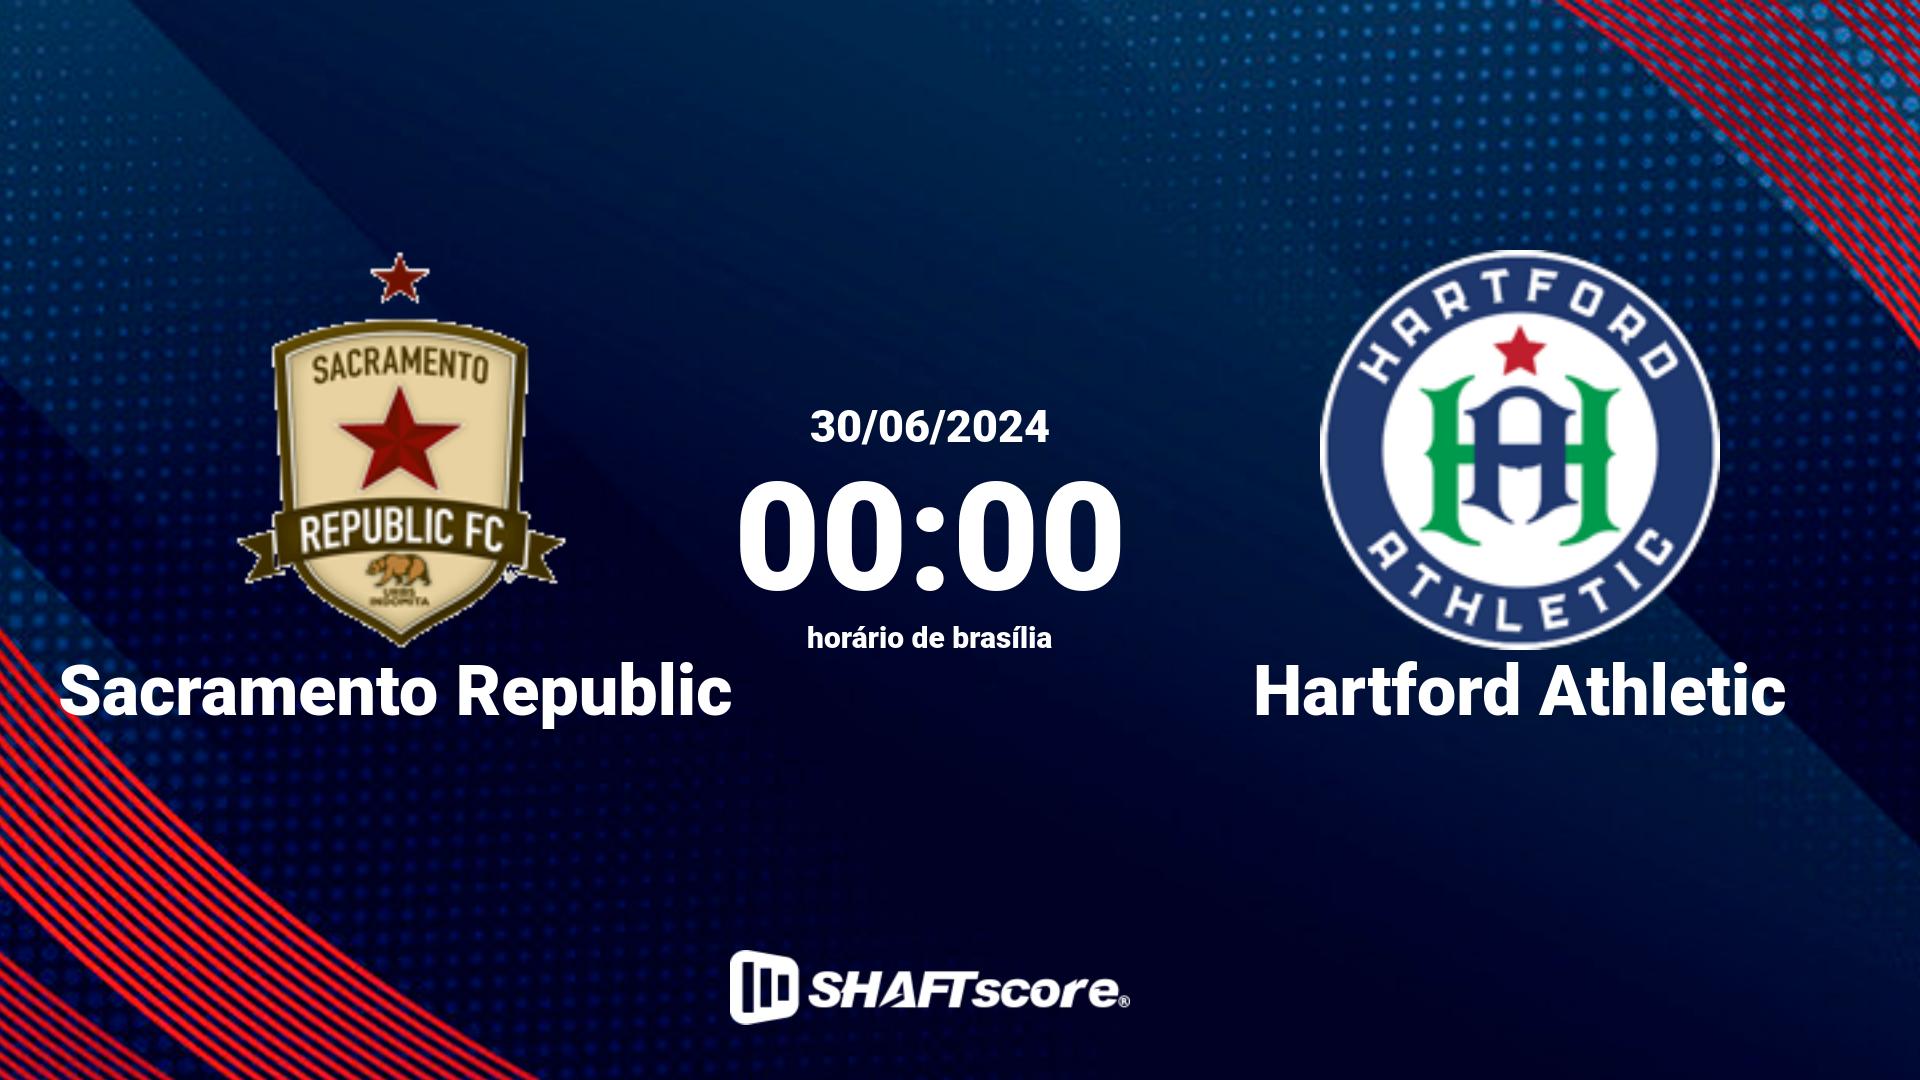 Estatísticas do jogo Sacramento Republic vs Hartford Athletic 30.06 00:00